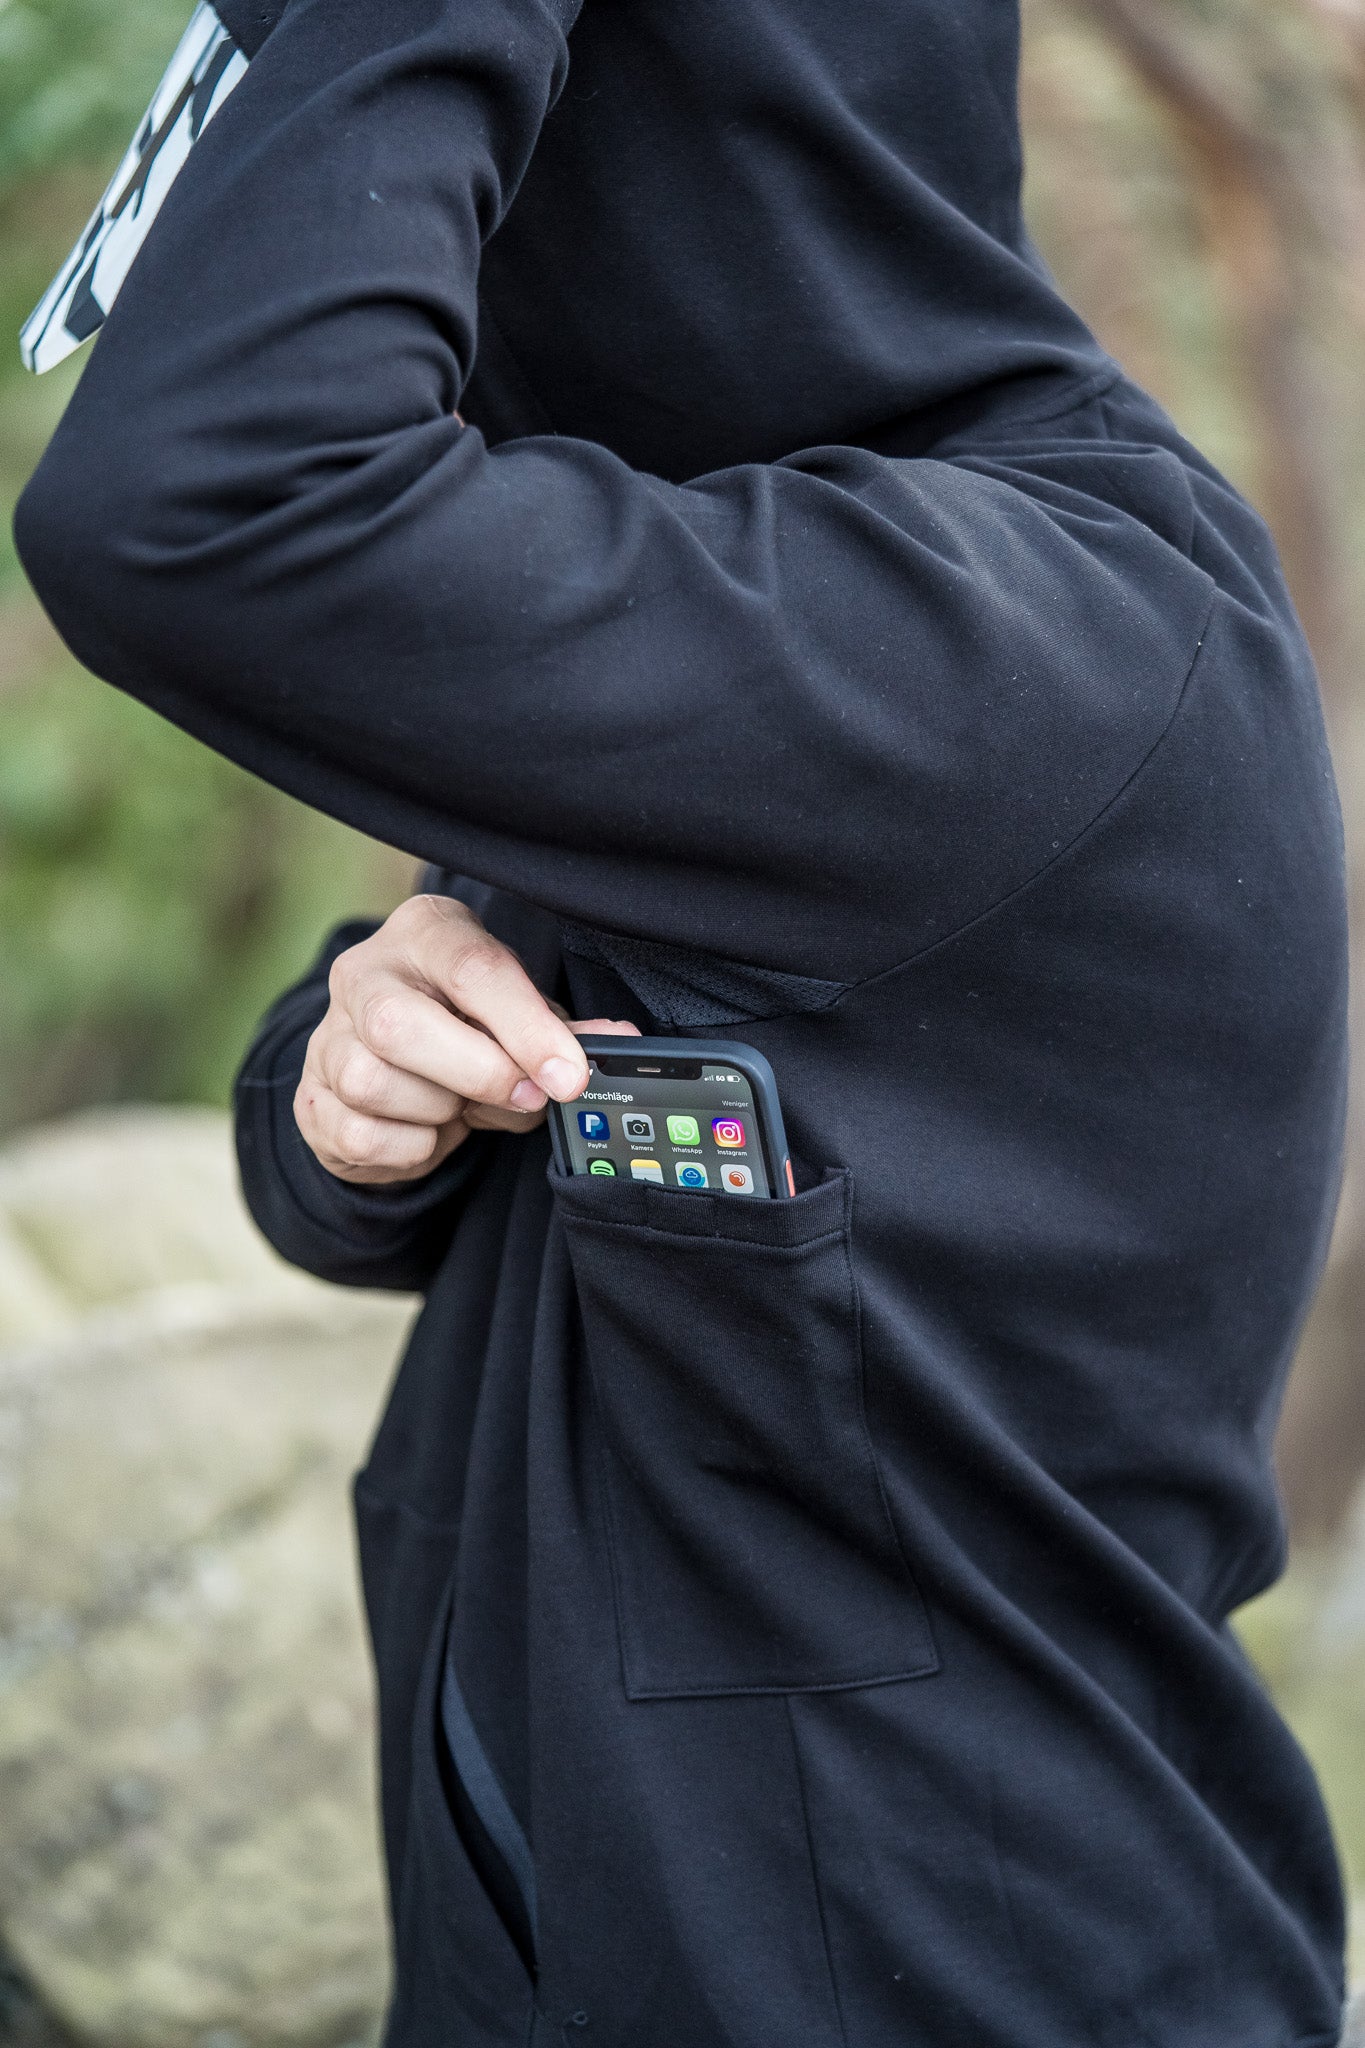 Secret Pocket for Phone or Cash under left arm